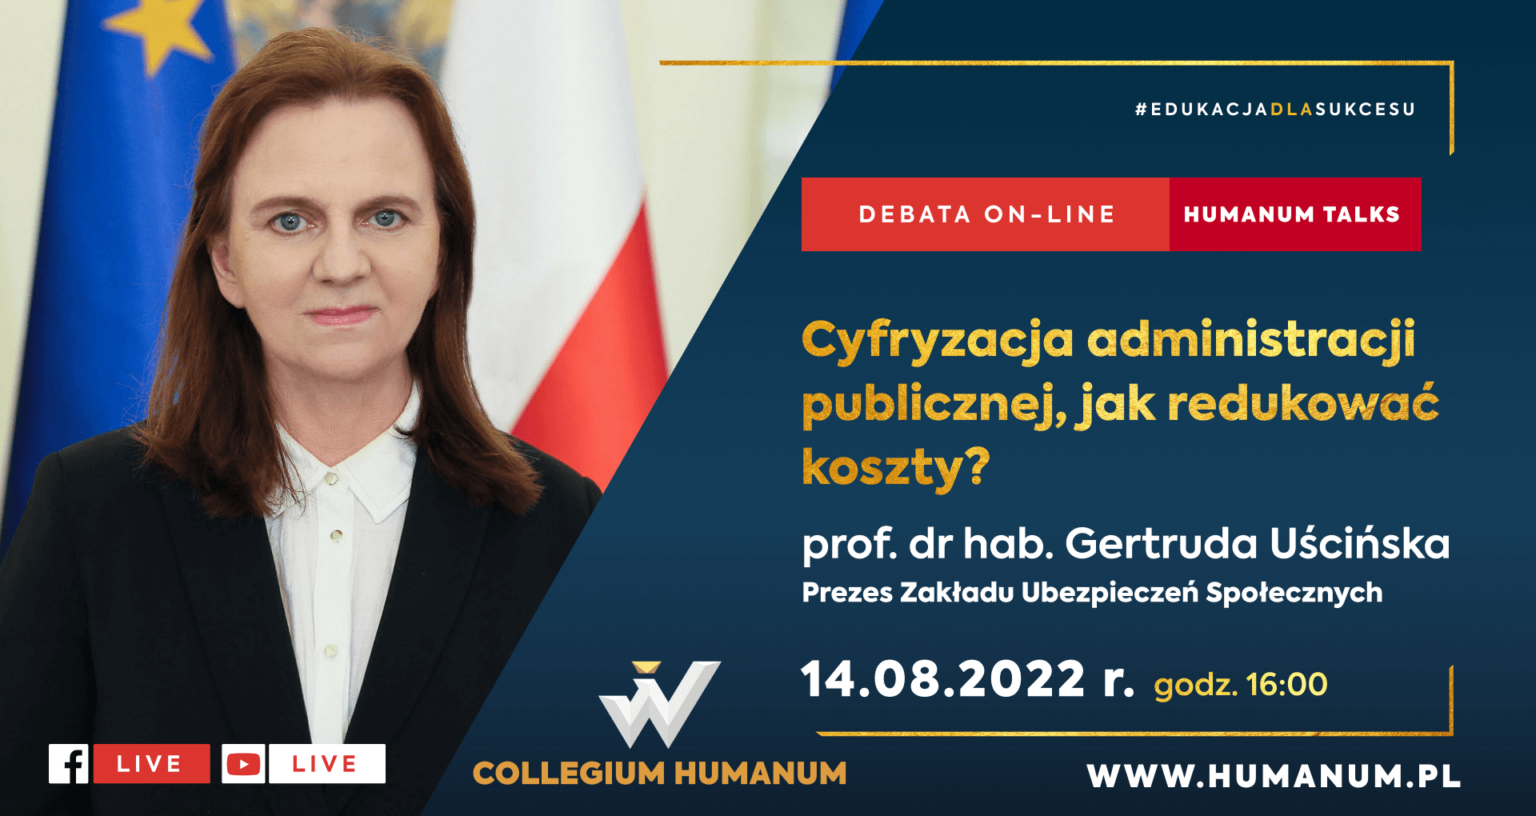 Webinar HUMANUM TALKS z prof. dr. hab. Gertrudą Uścińską Prezes ZUS pt.: “Cyfryzacja administracji publicznej, jak redukować koszty”